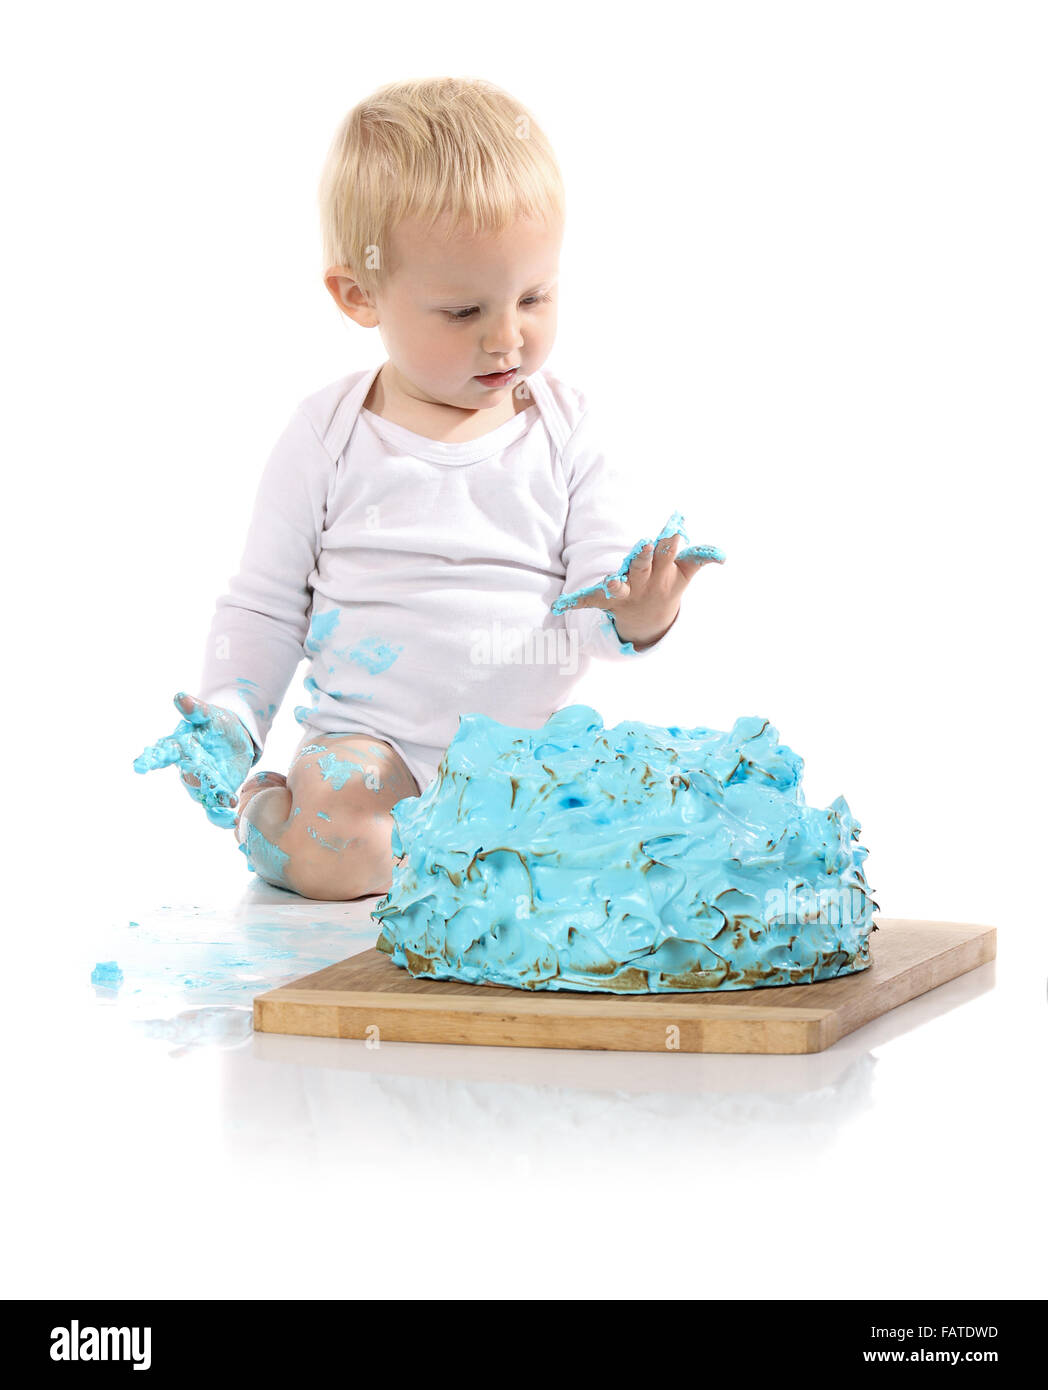 Un petit garçon âgé d'un an brisant une anniversaire glacé bleu gâteau sur une planche de bois. L'image est isolé sur un fond blanc. Banque D'Images